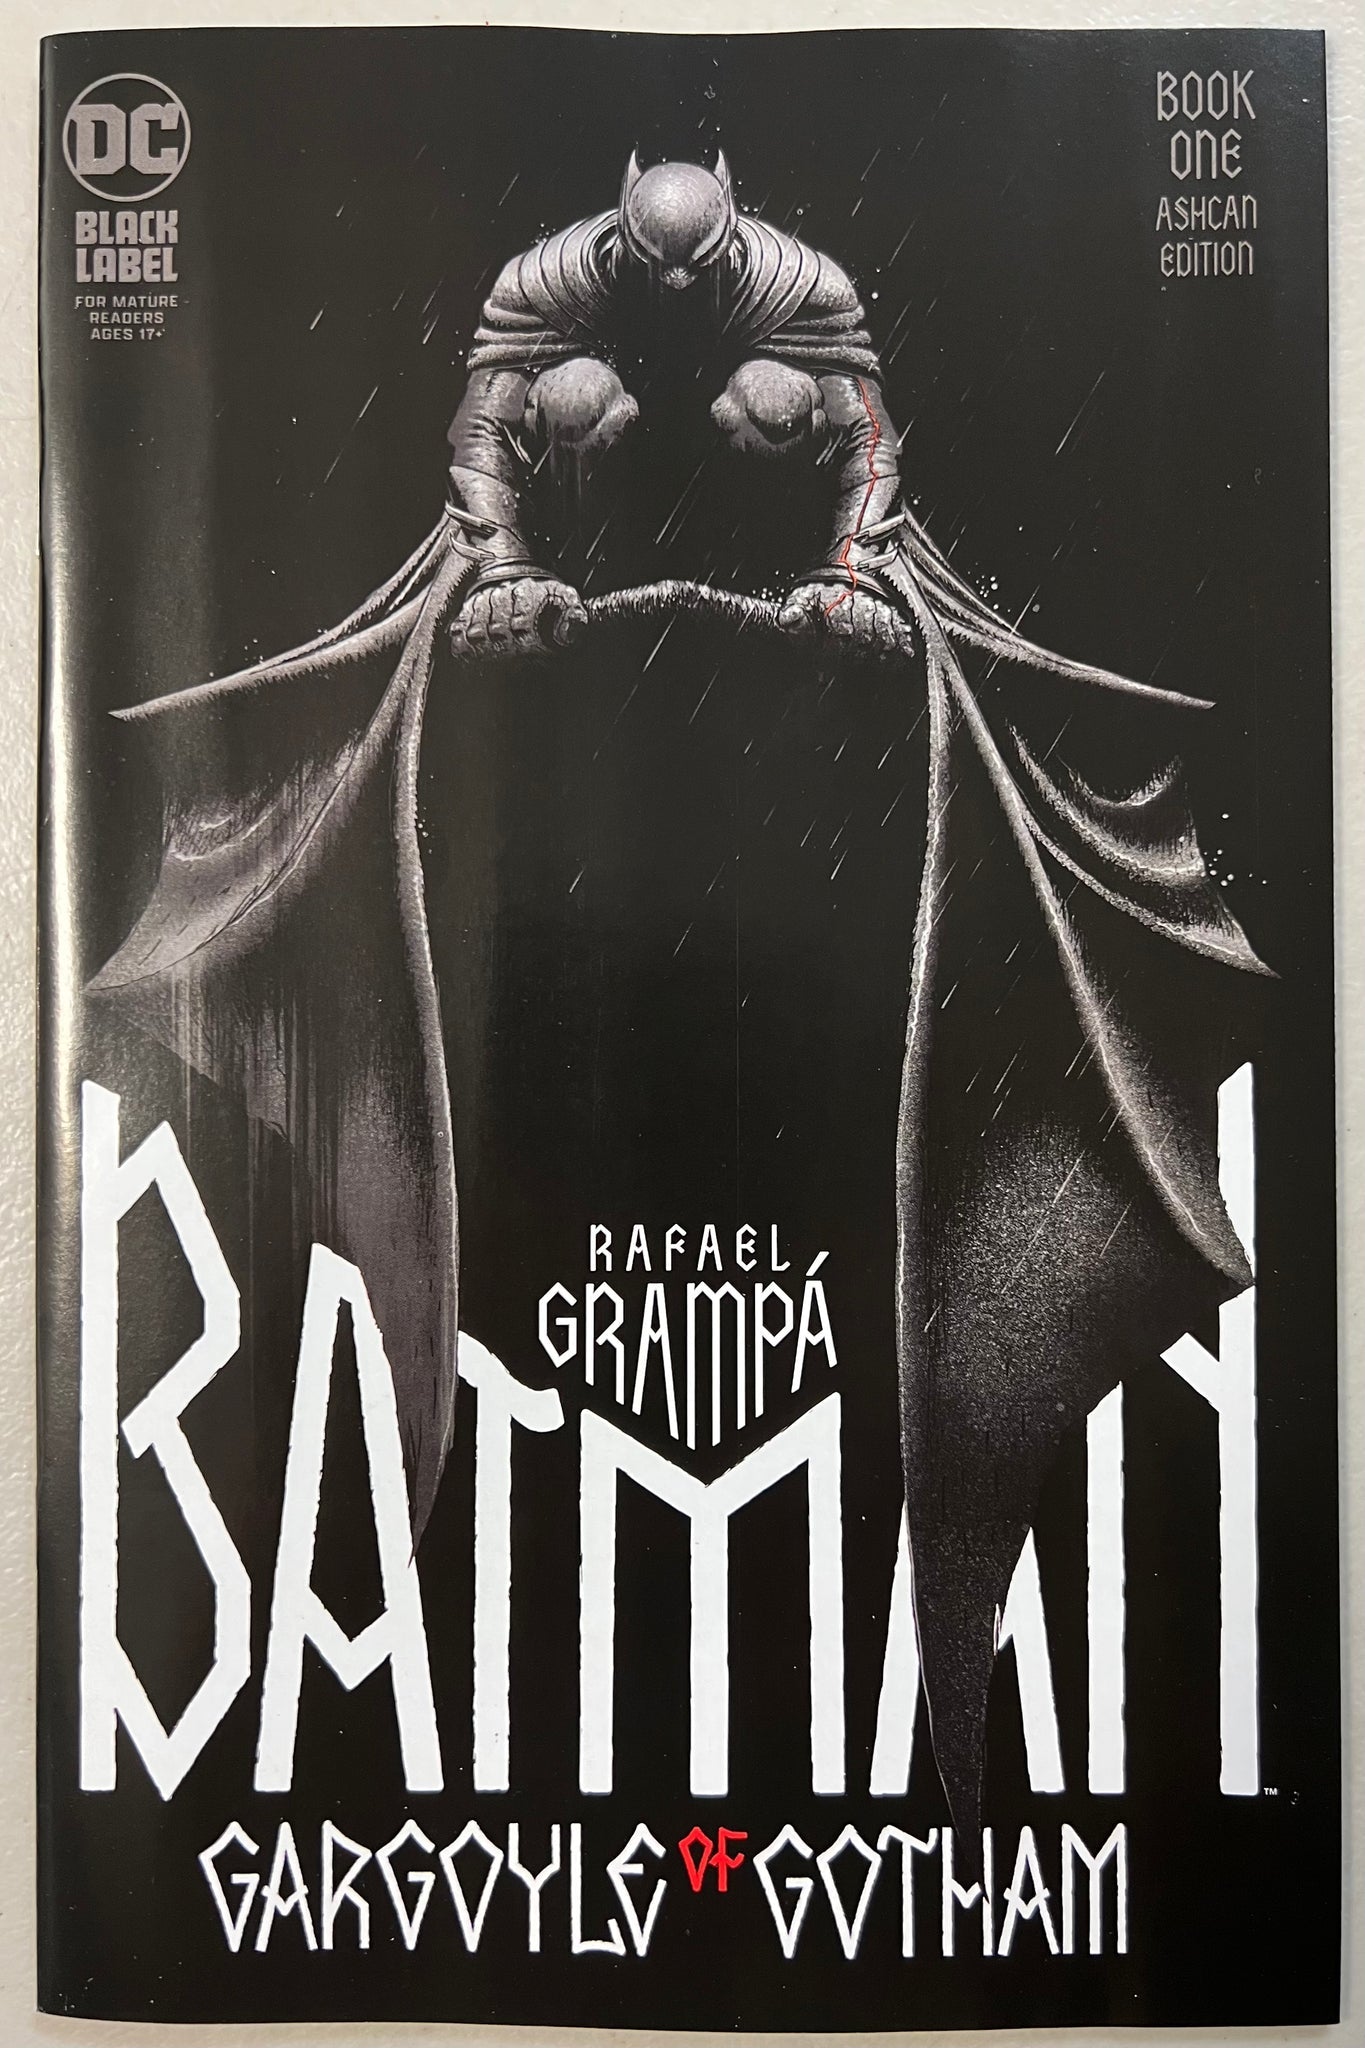 Batman Gargoyle of Gotham (ashcan edition)